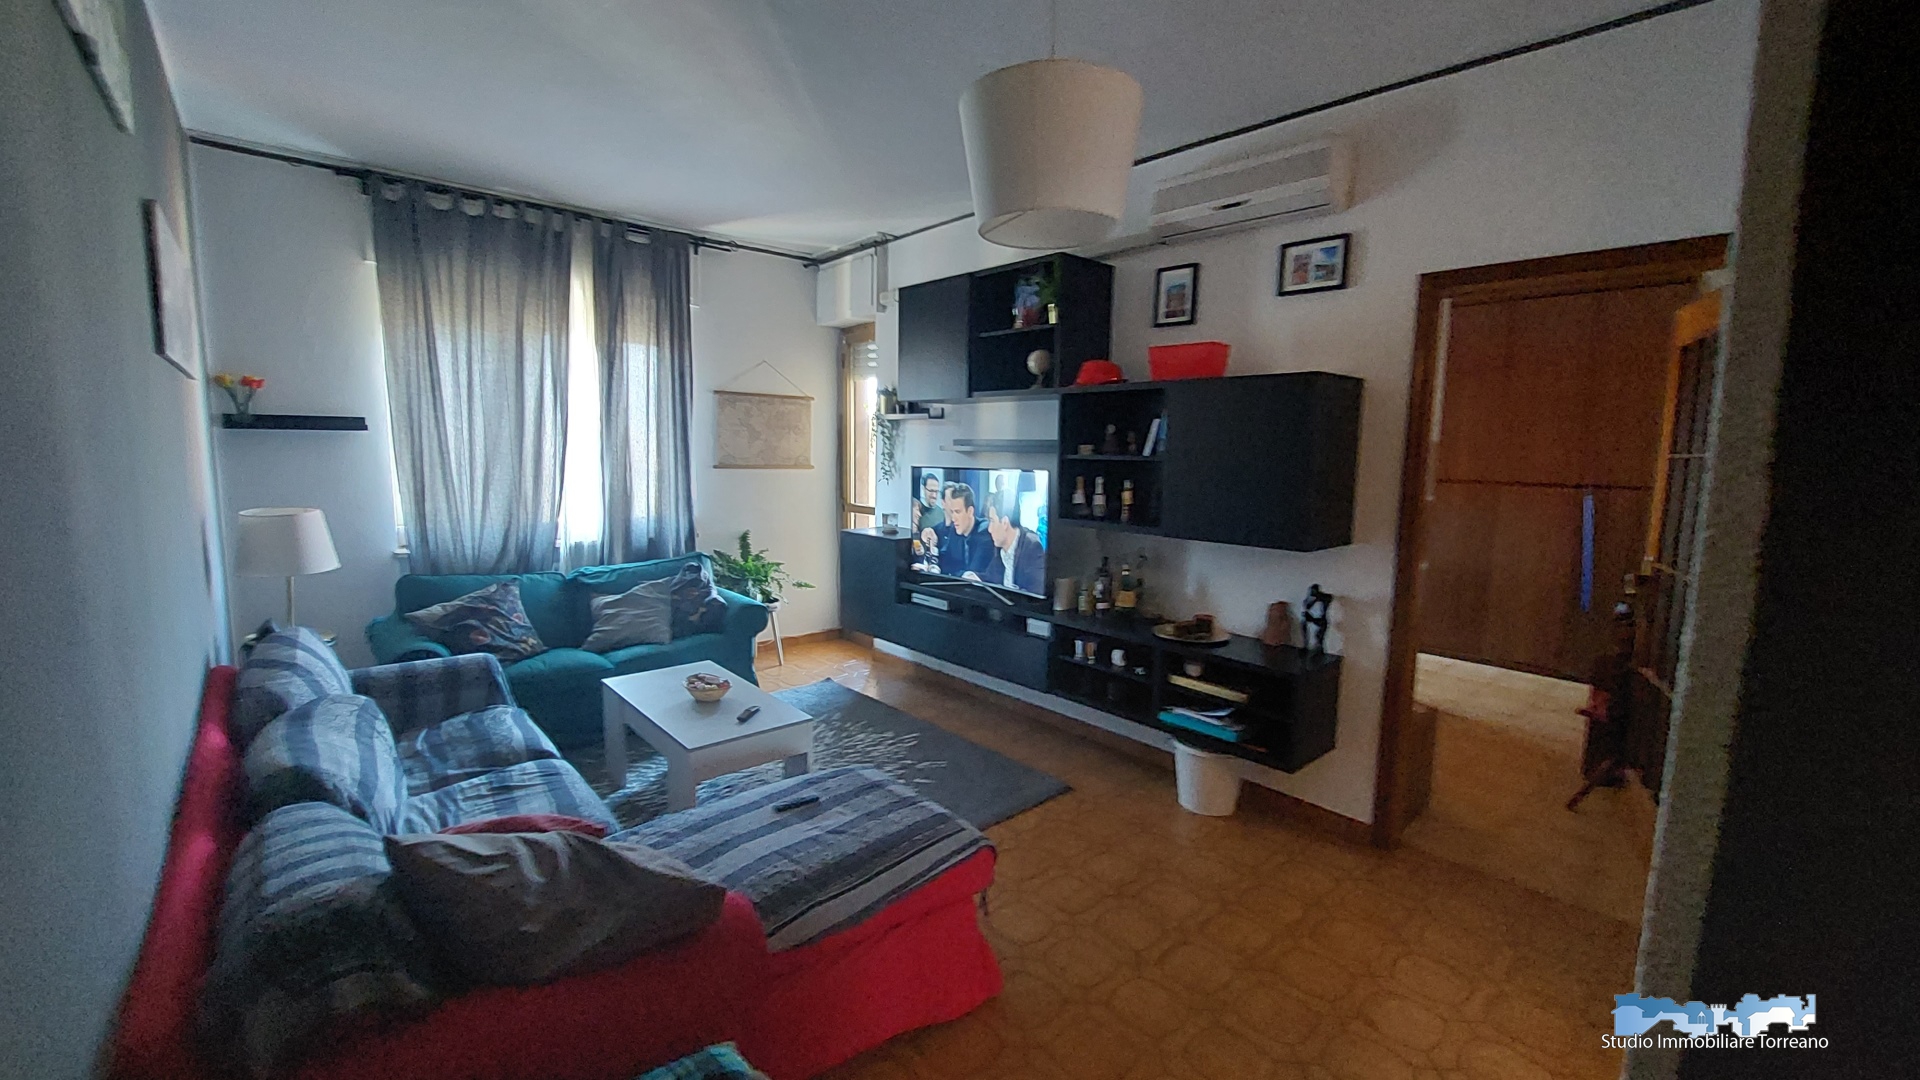 Appartamento in vendita a Ivrea, 4 locali, prezzo € 79.000 | PortaleAgenzieImmobiliari.it